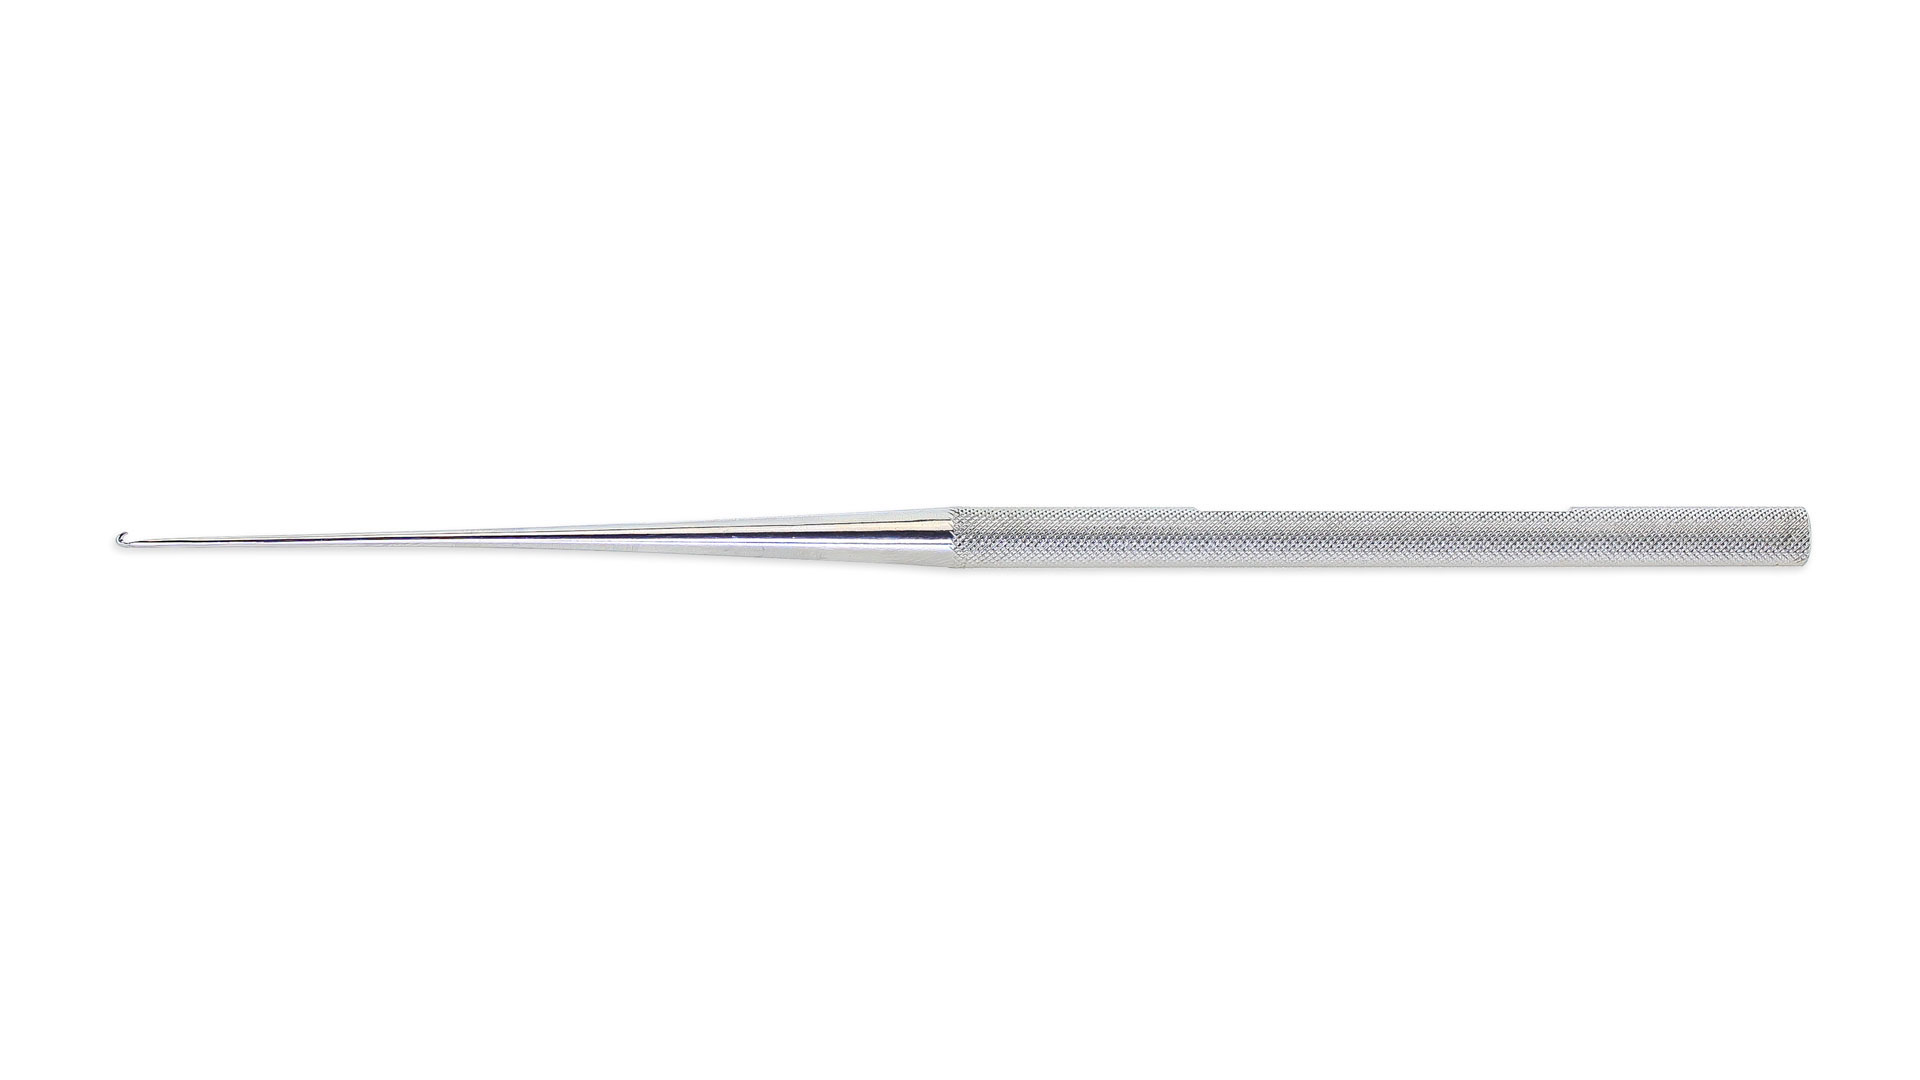 Phlebectomy Hook - 1.65mm Hook